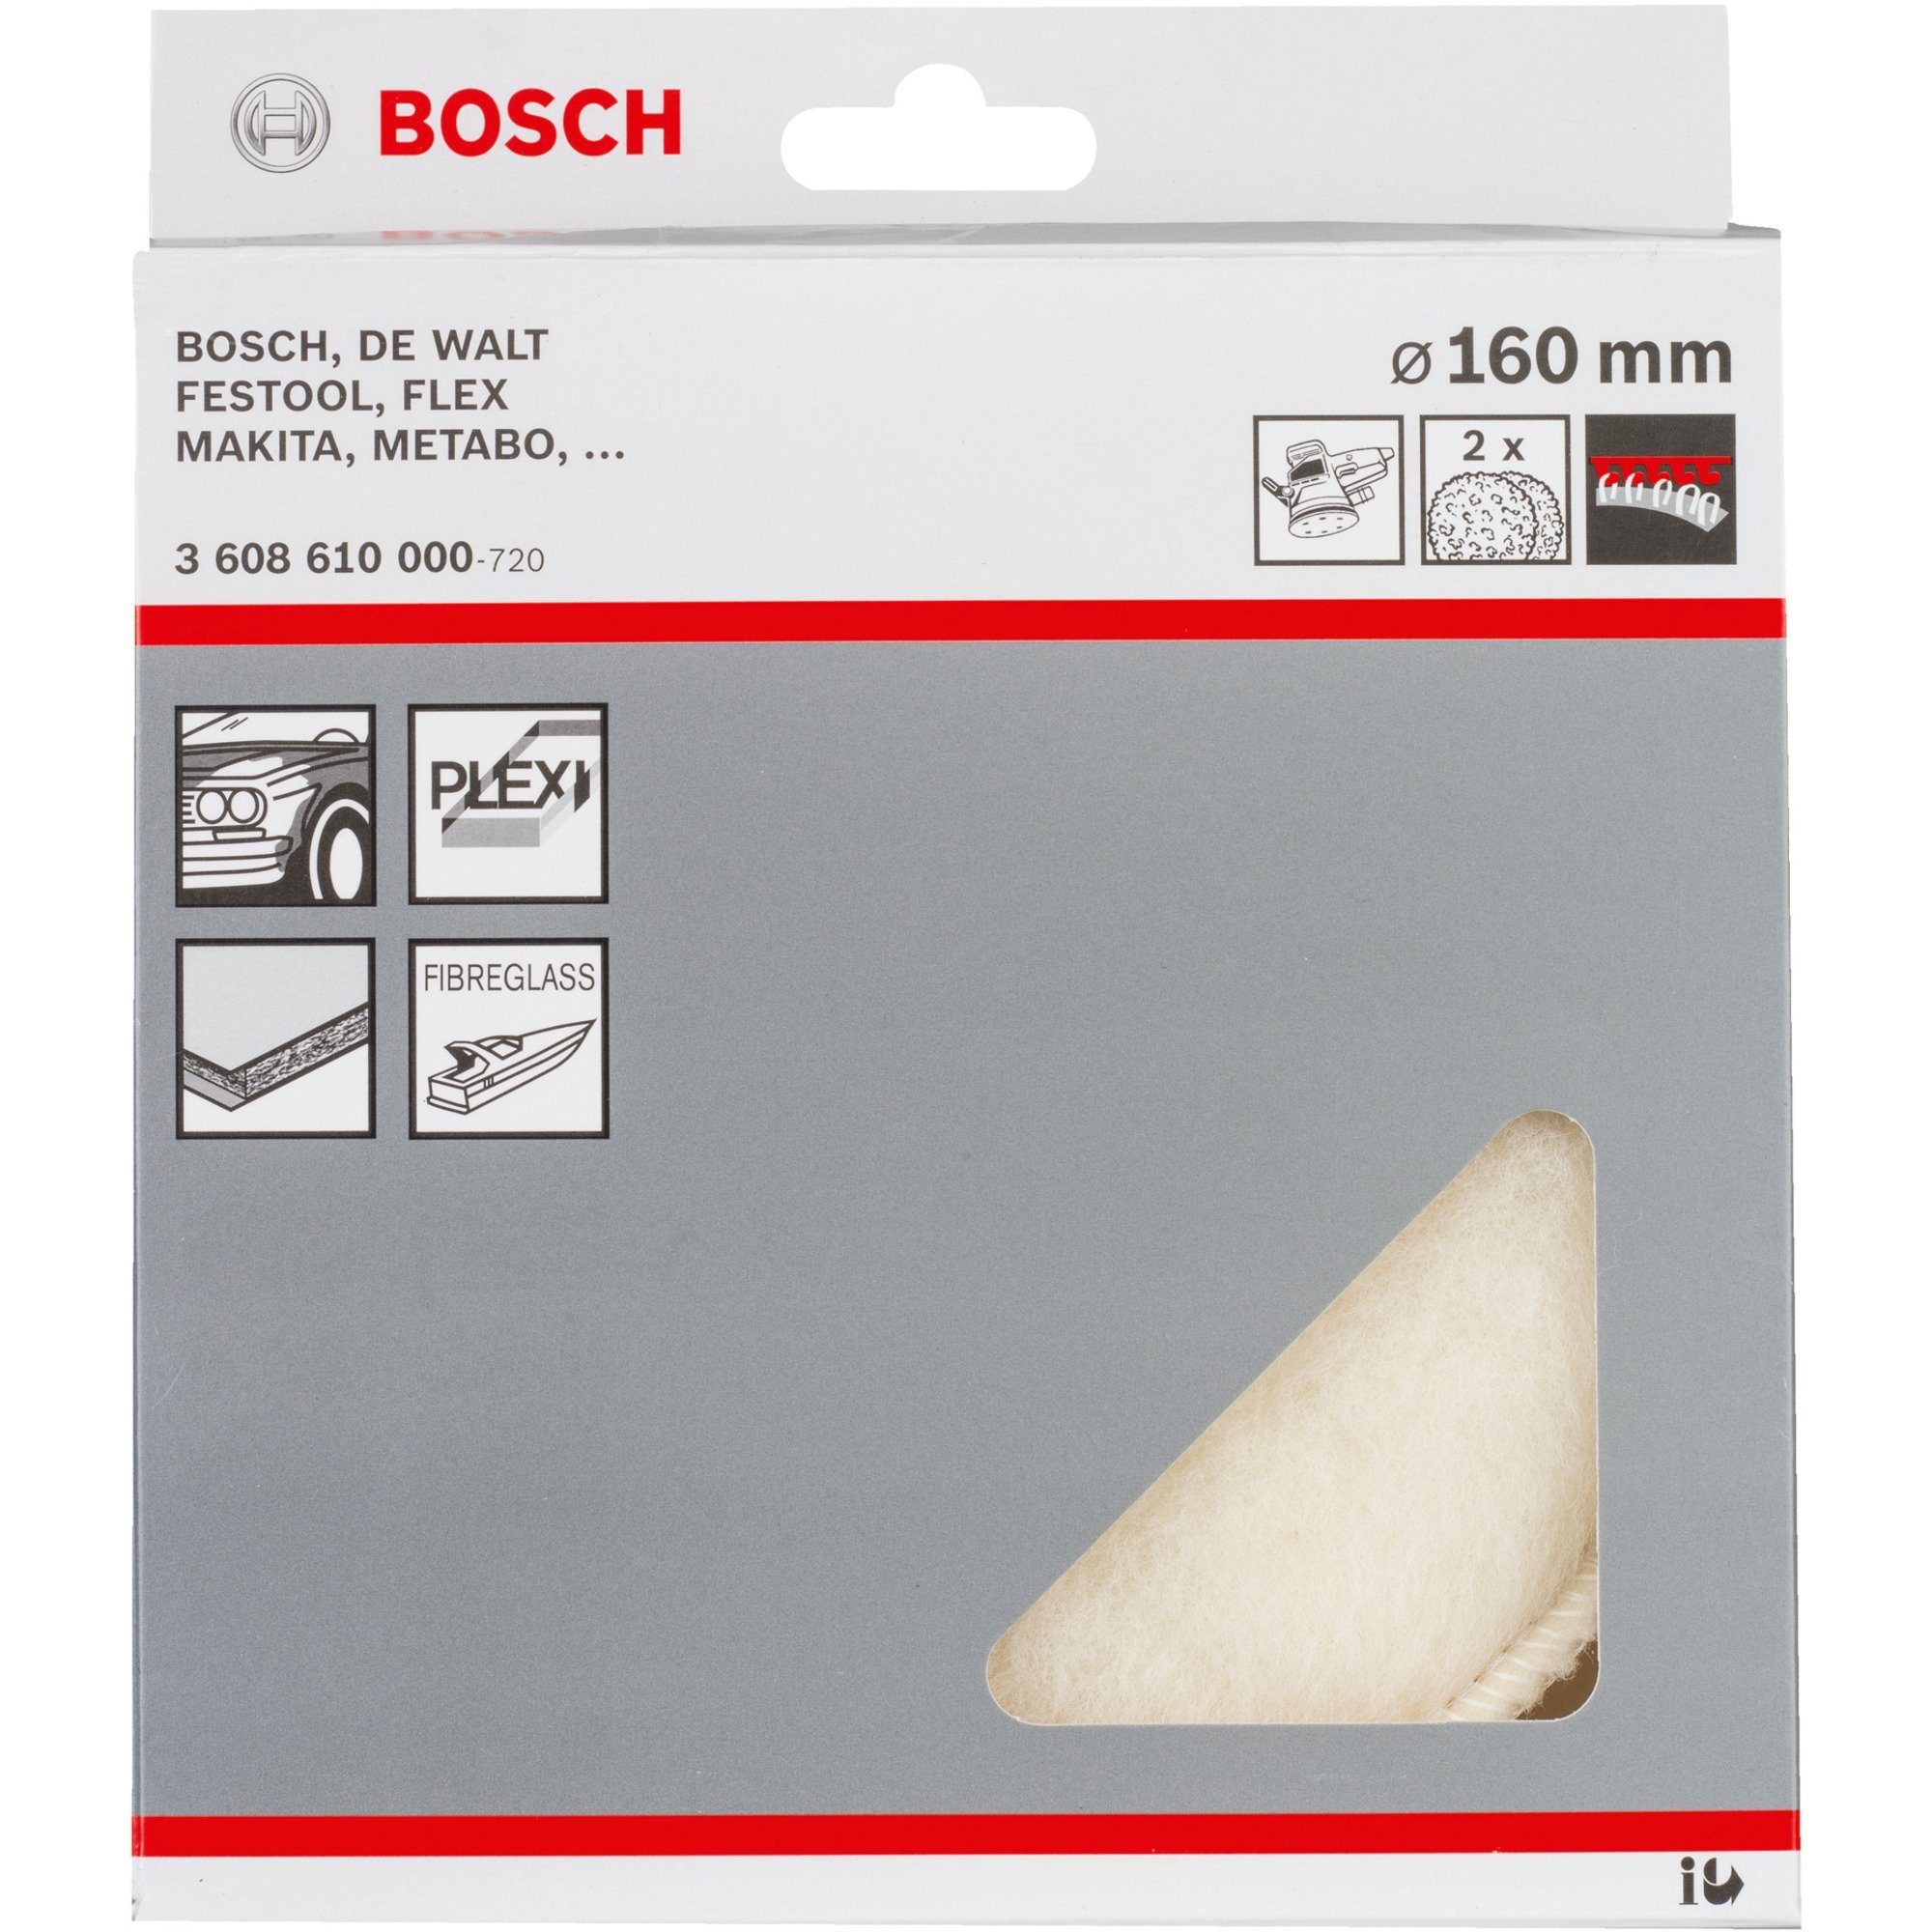 BOSCH Schleifscheibe Bosch Professional Lammfellscheibe, Ø 160mm, 2